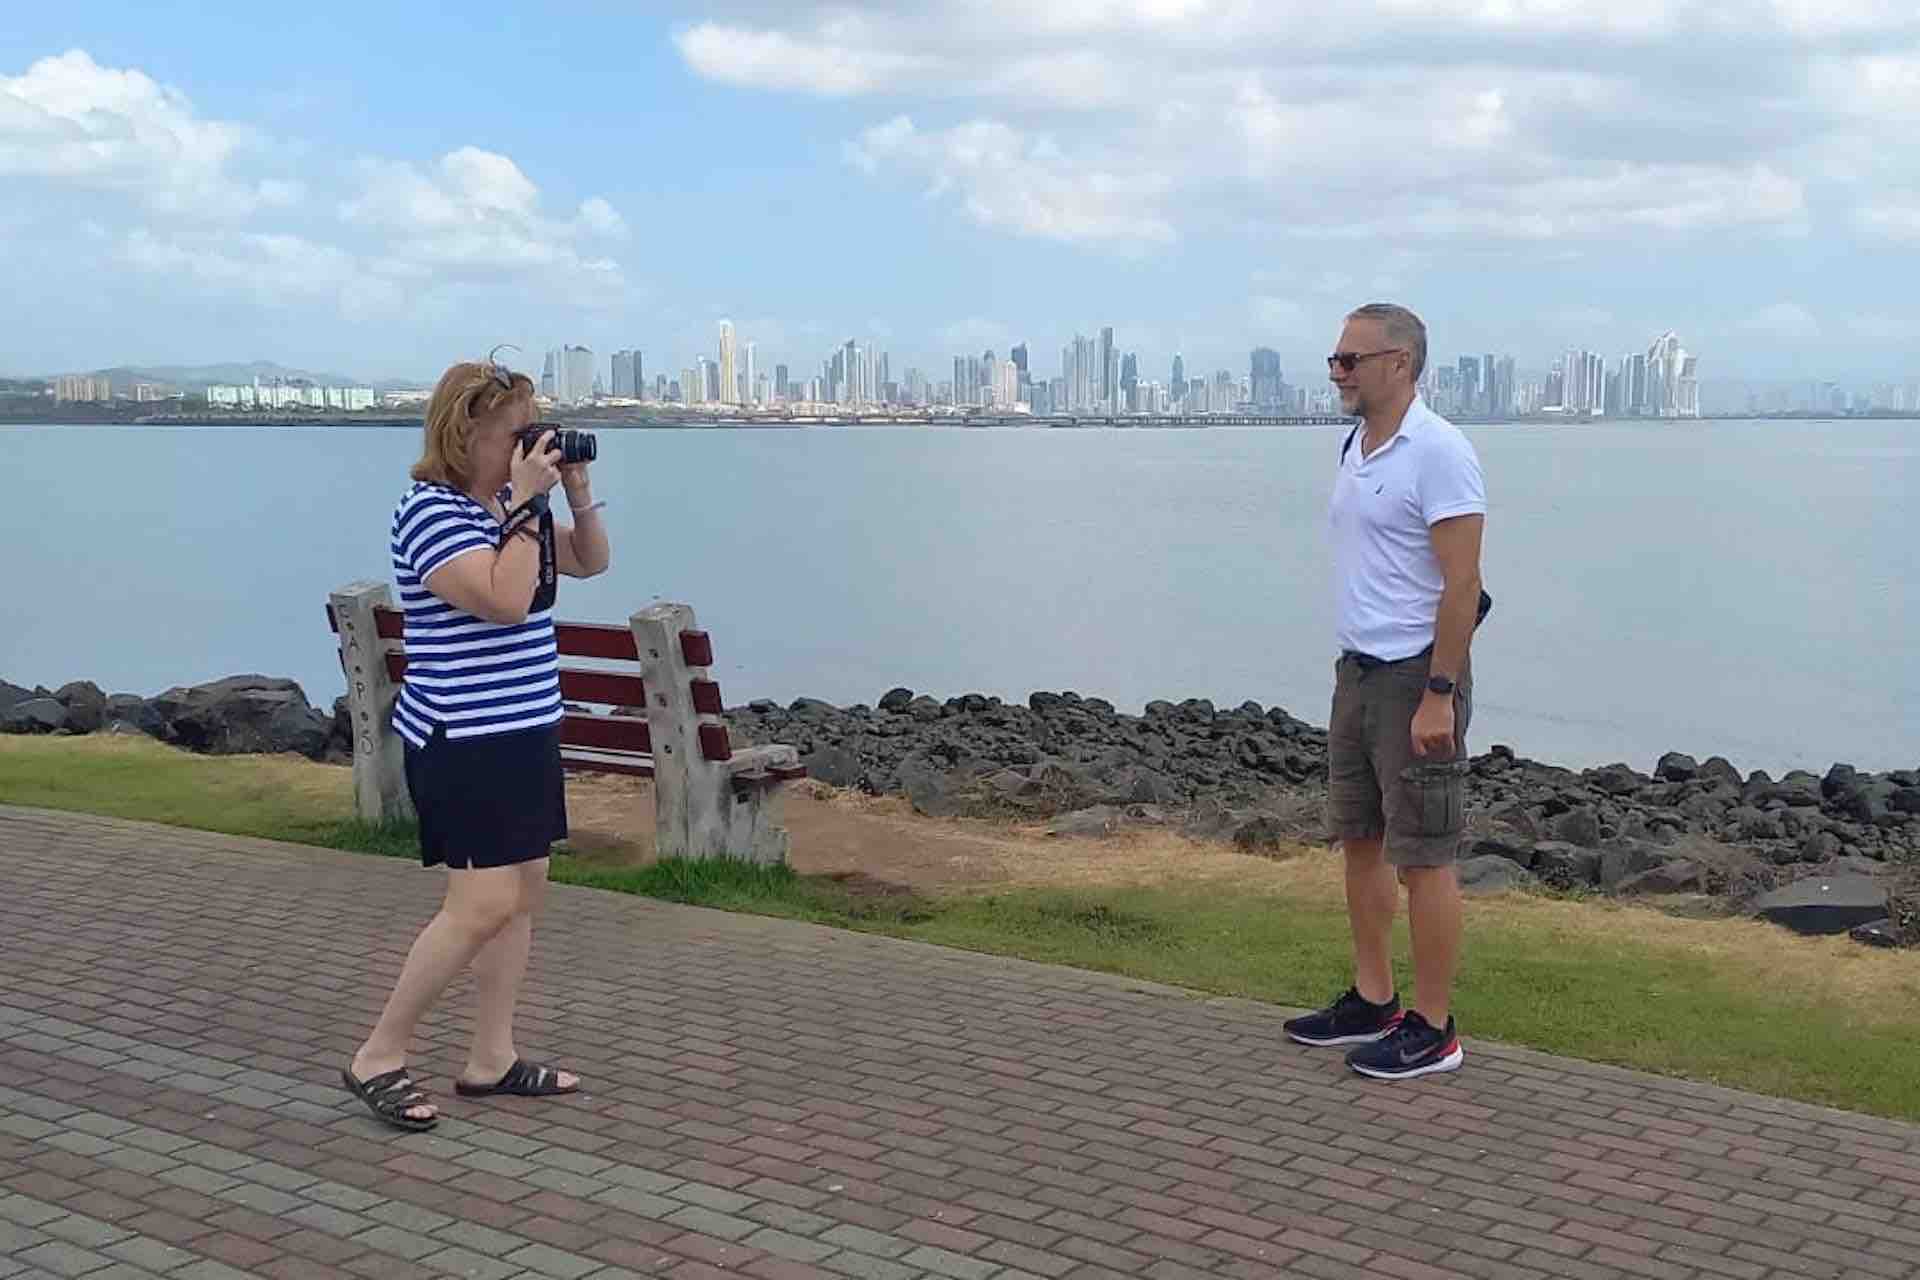 Panama City Panama Canal tour guests at Amador Causeway taking photos